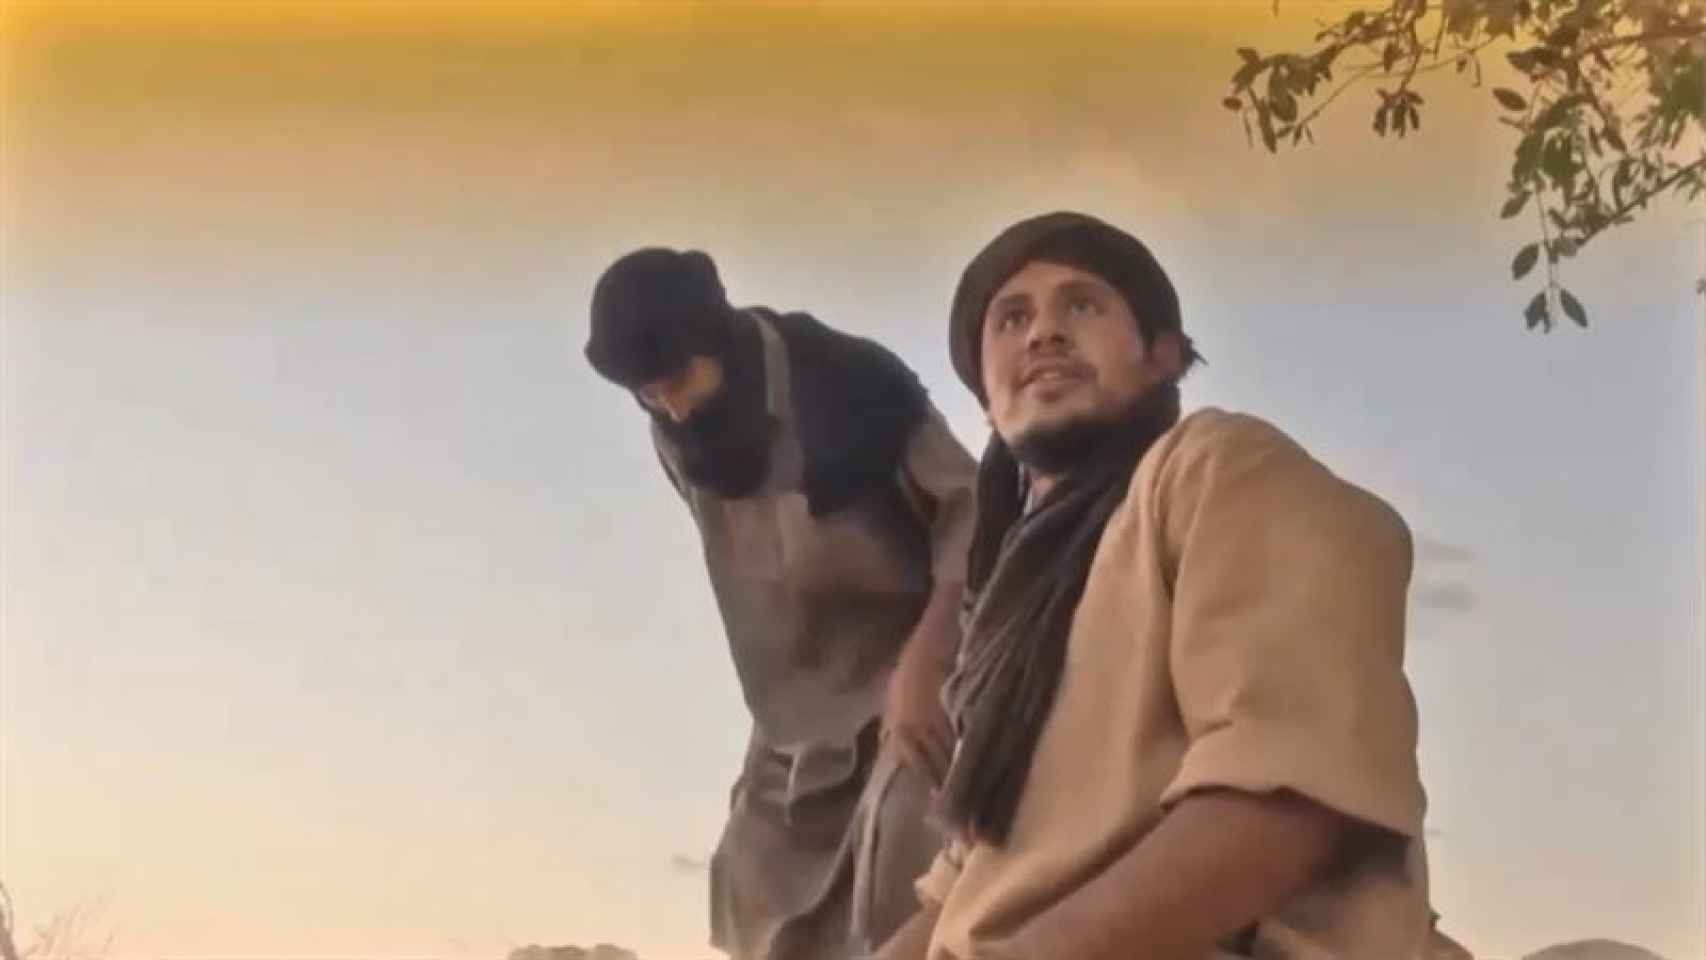 Imagen del vídeo difundido por los yihadistas.